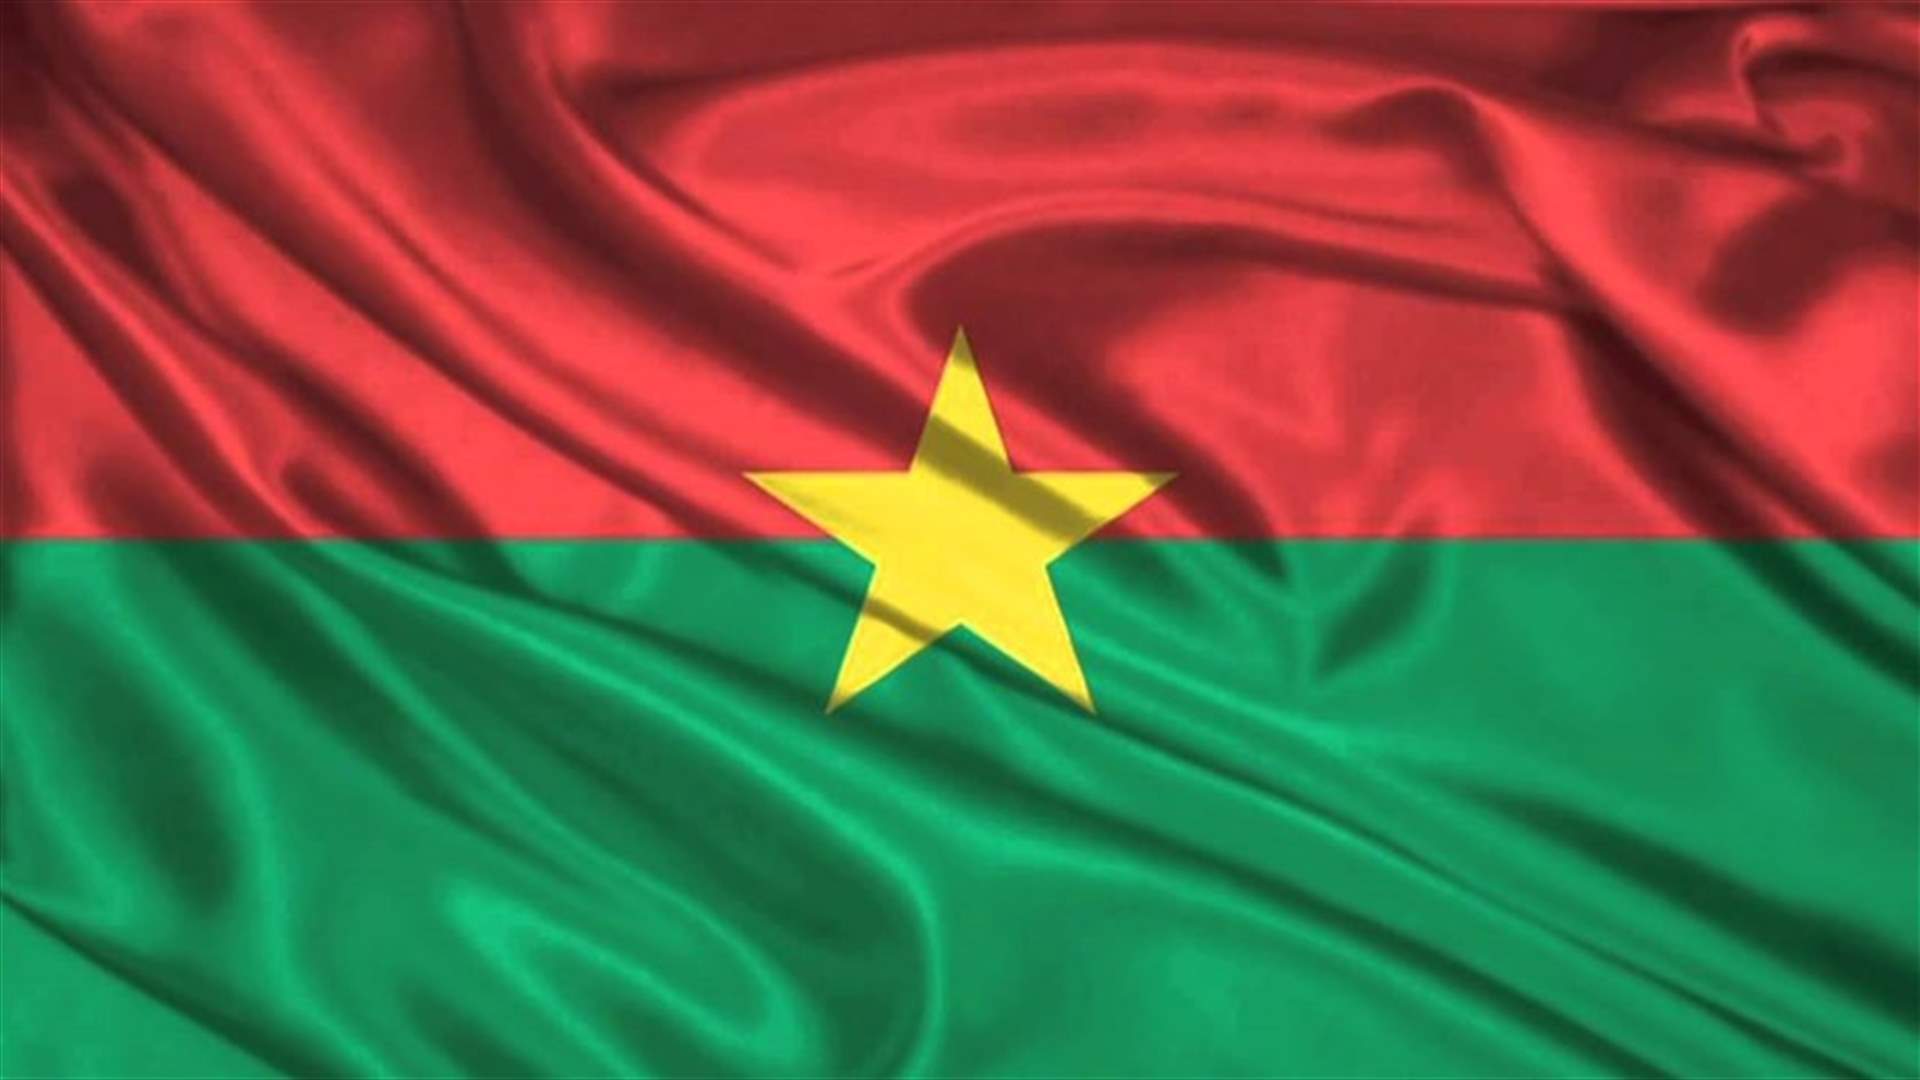 جهاديون يقتلون 17 مدنيا في شمال بوركينا فاسو